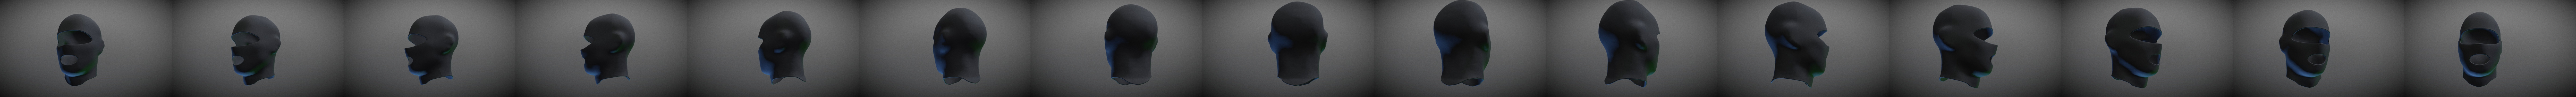 Basic male ski mask Marvelous Clo 3D zpj obj fbx 3D model